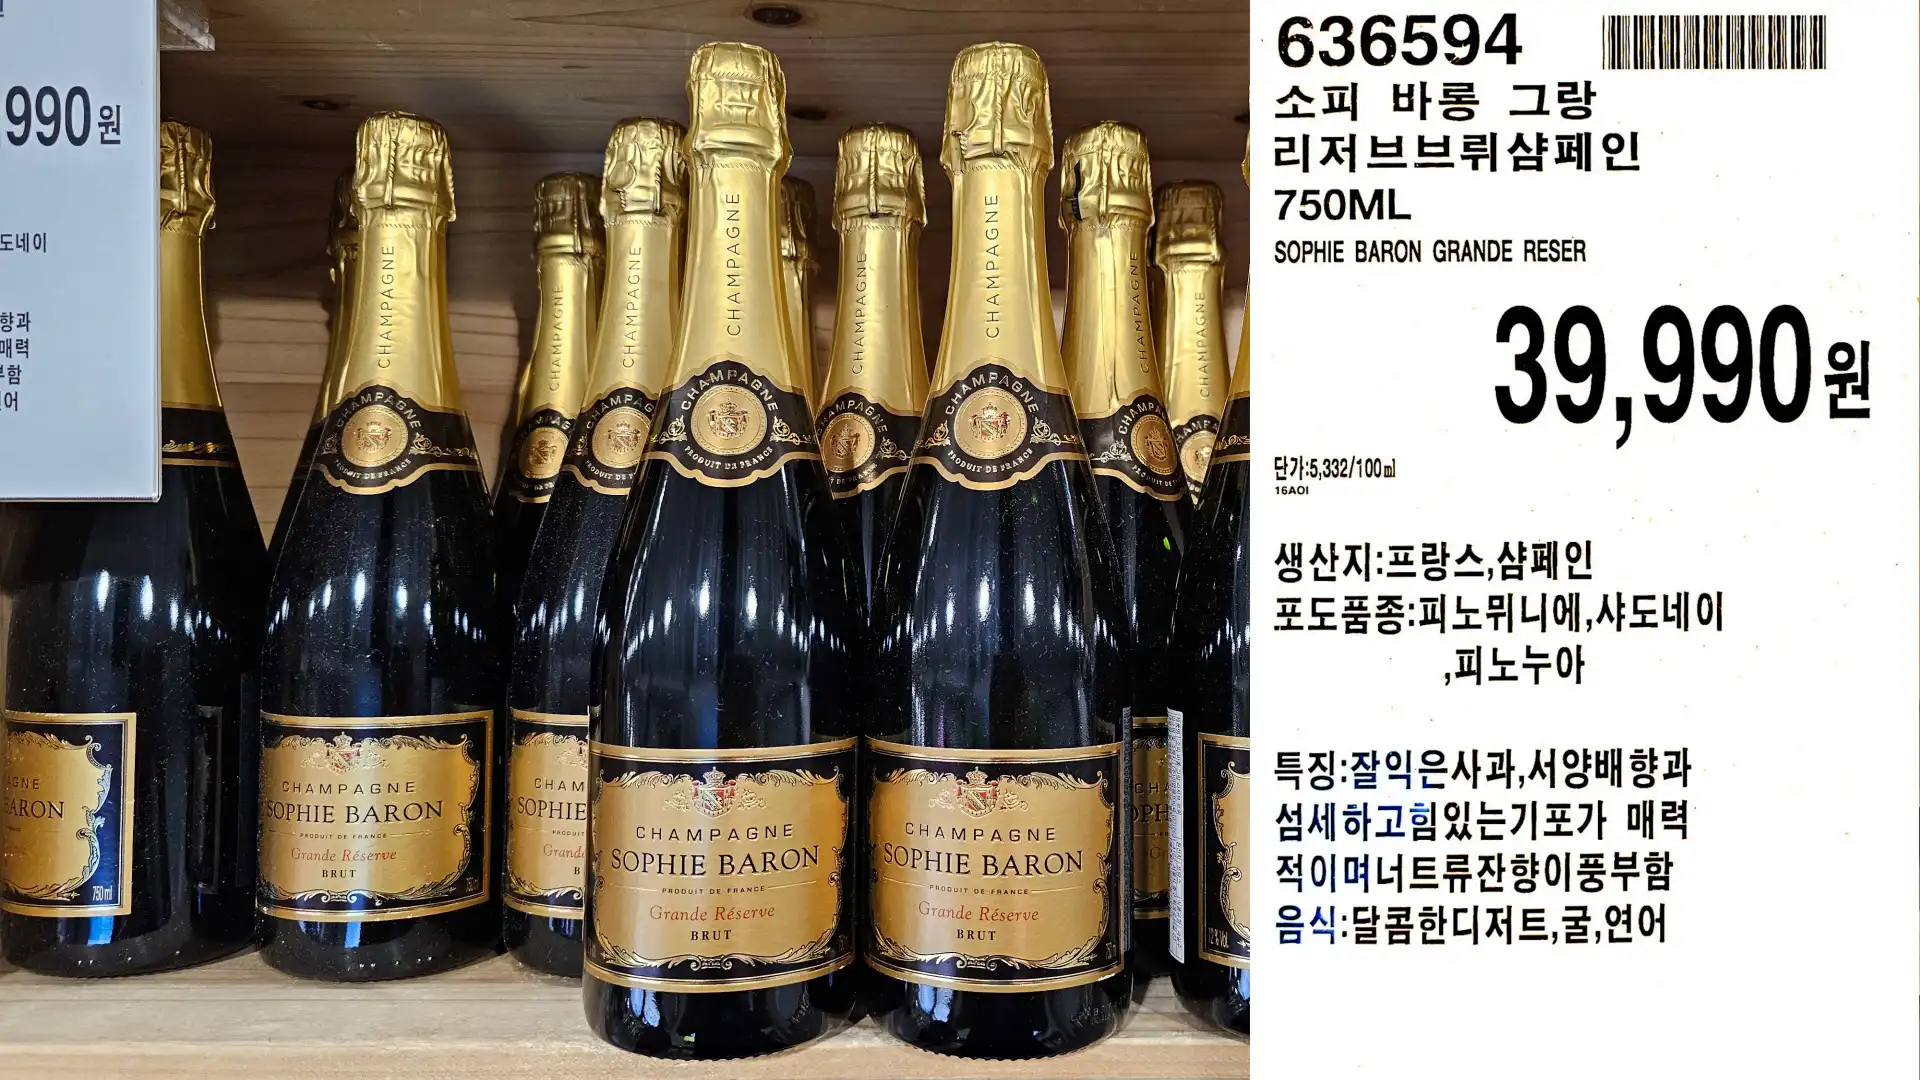 소피 바롱 그랑
리저브브뤼샴페인
750ML
SOPHIE BARON GRANDE RESER
39,990 원